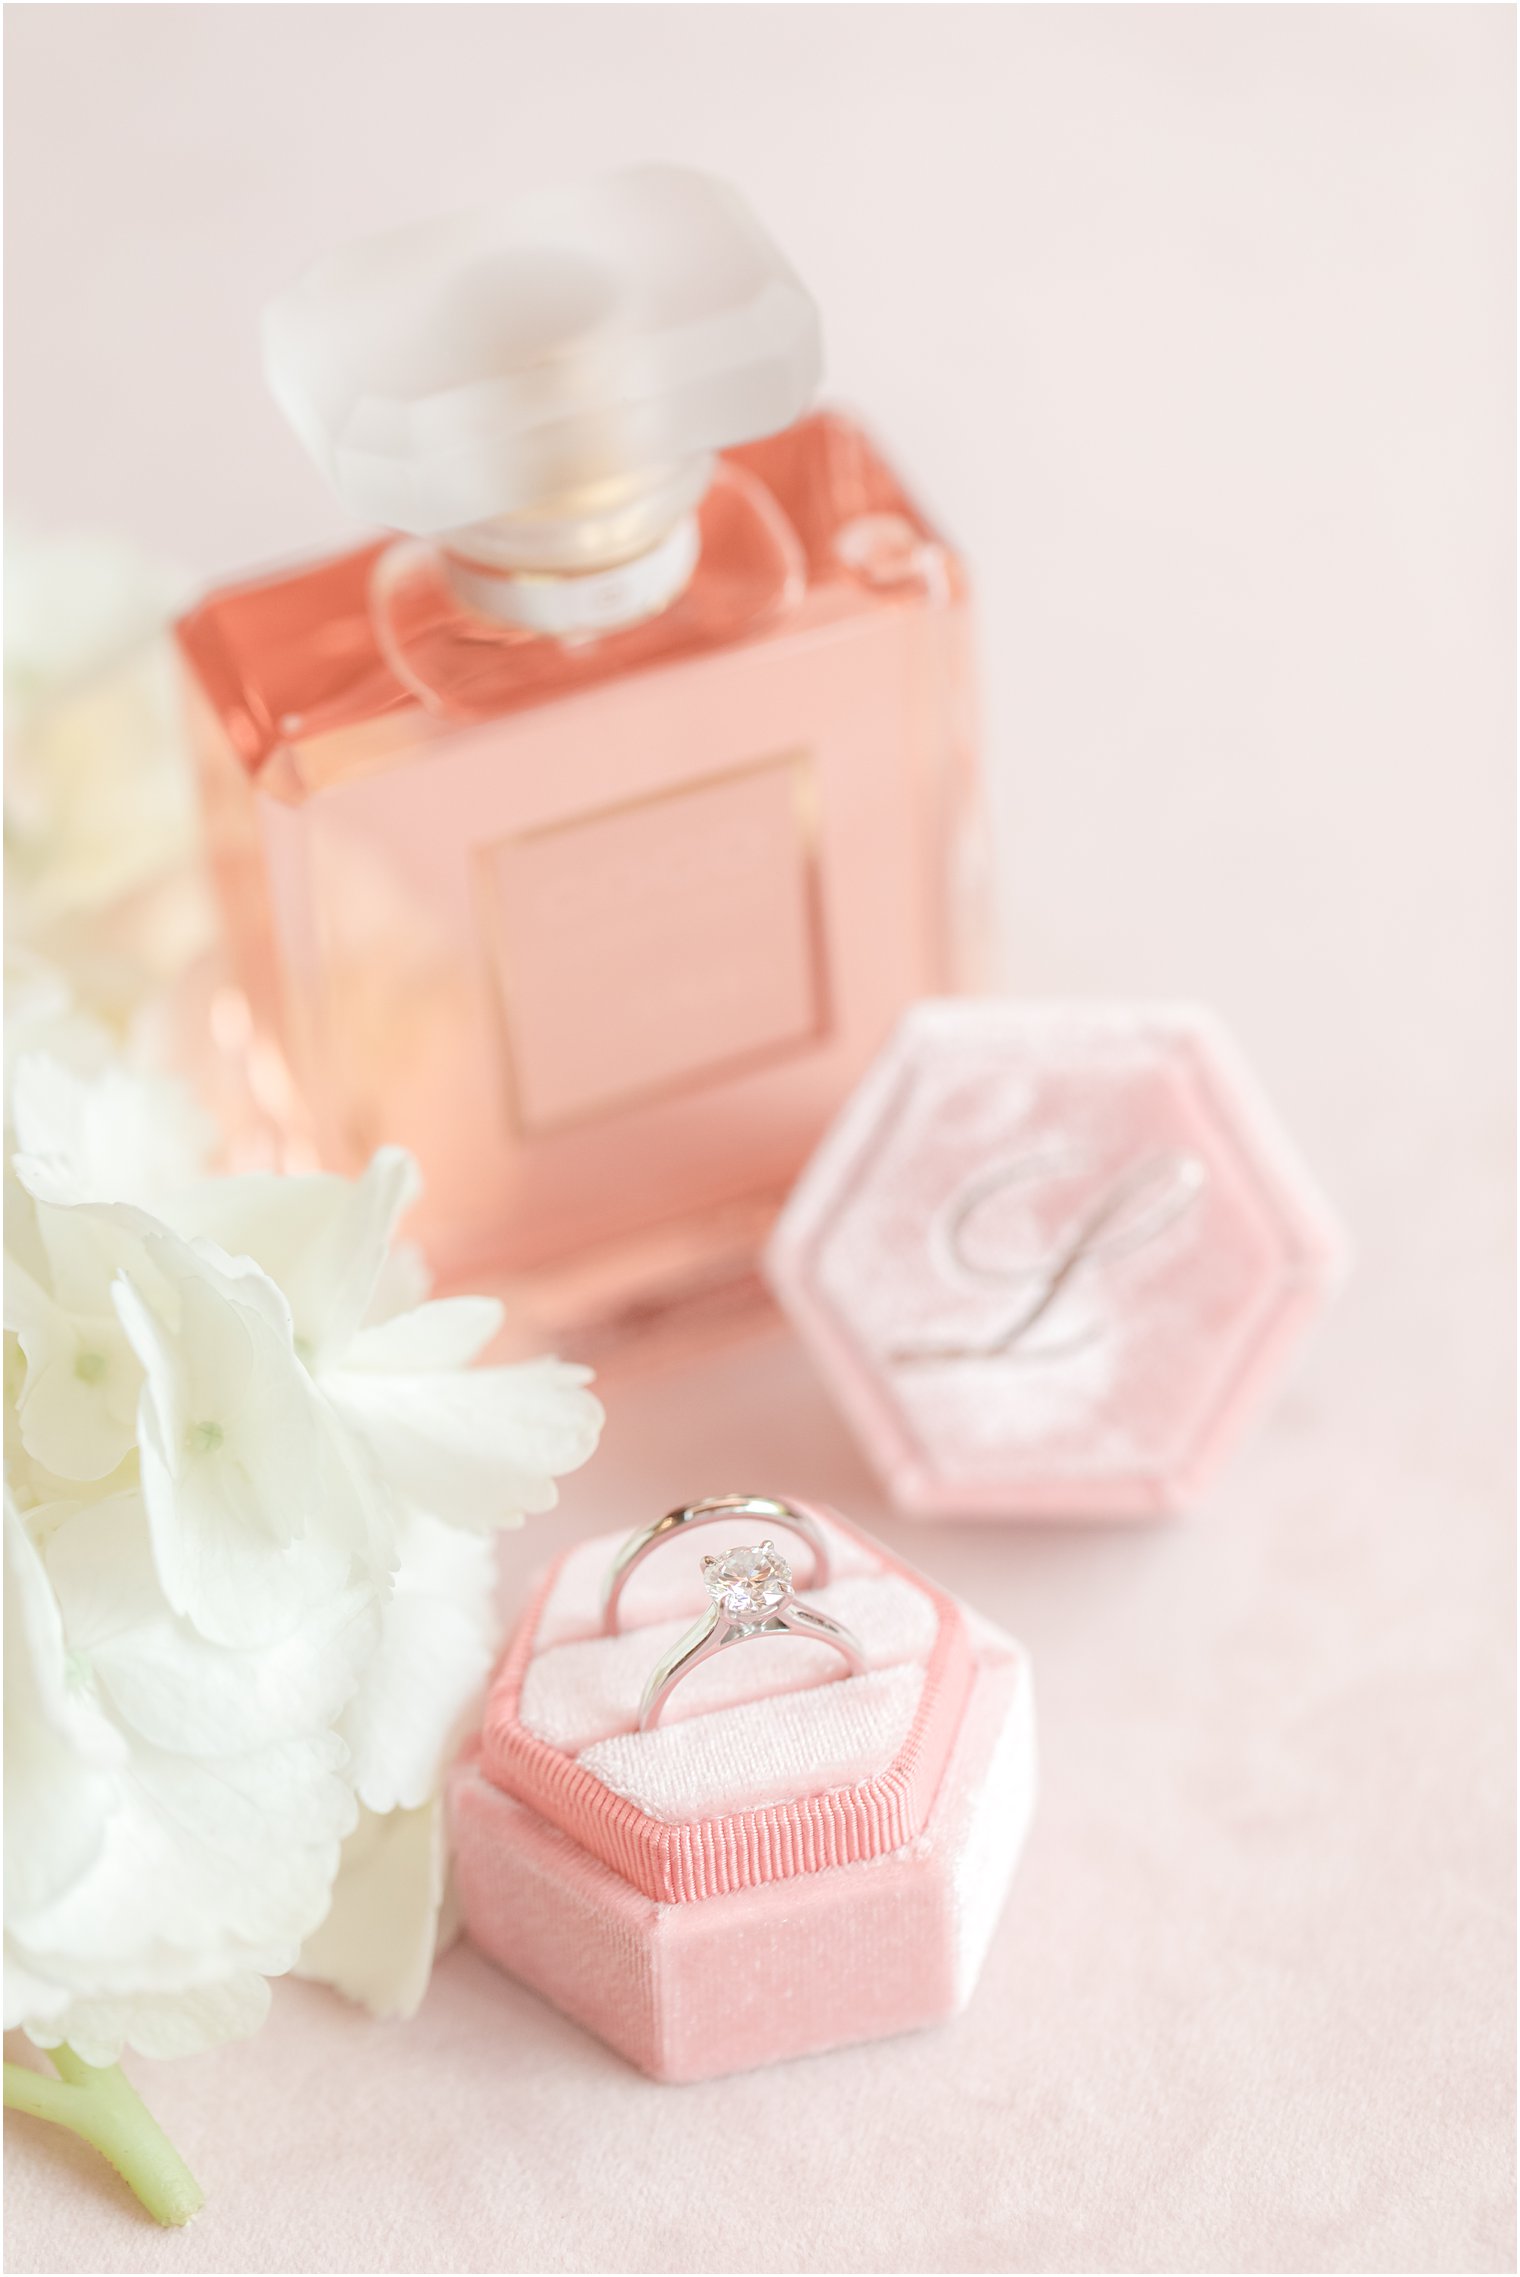 Engagement ring in pink velvet ring box